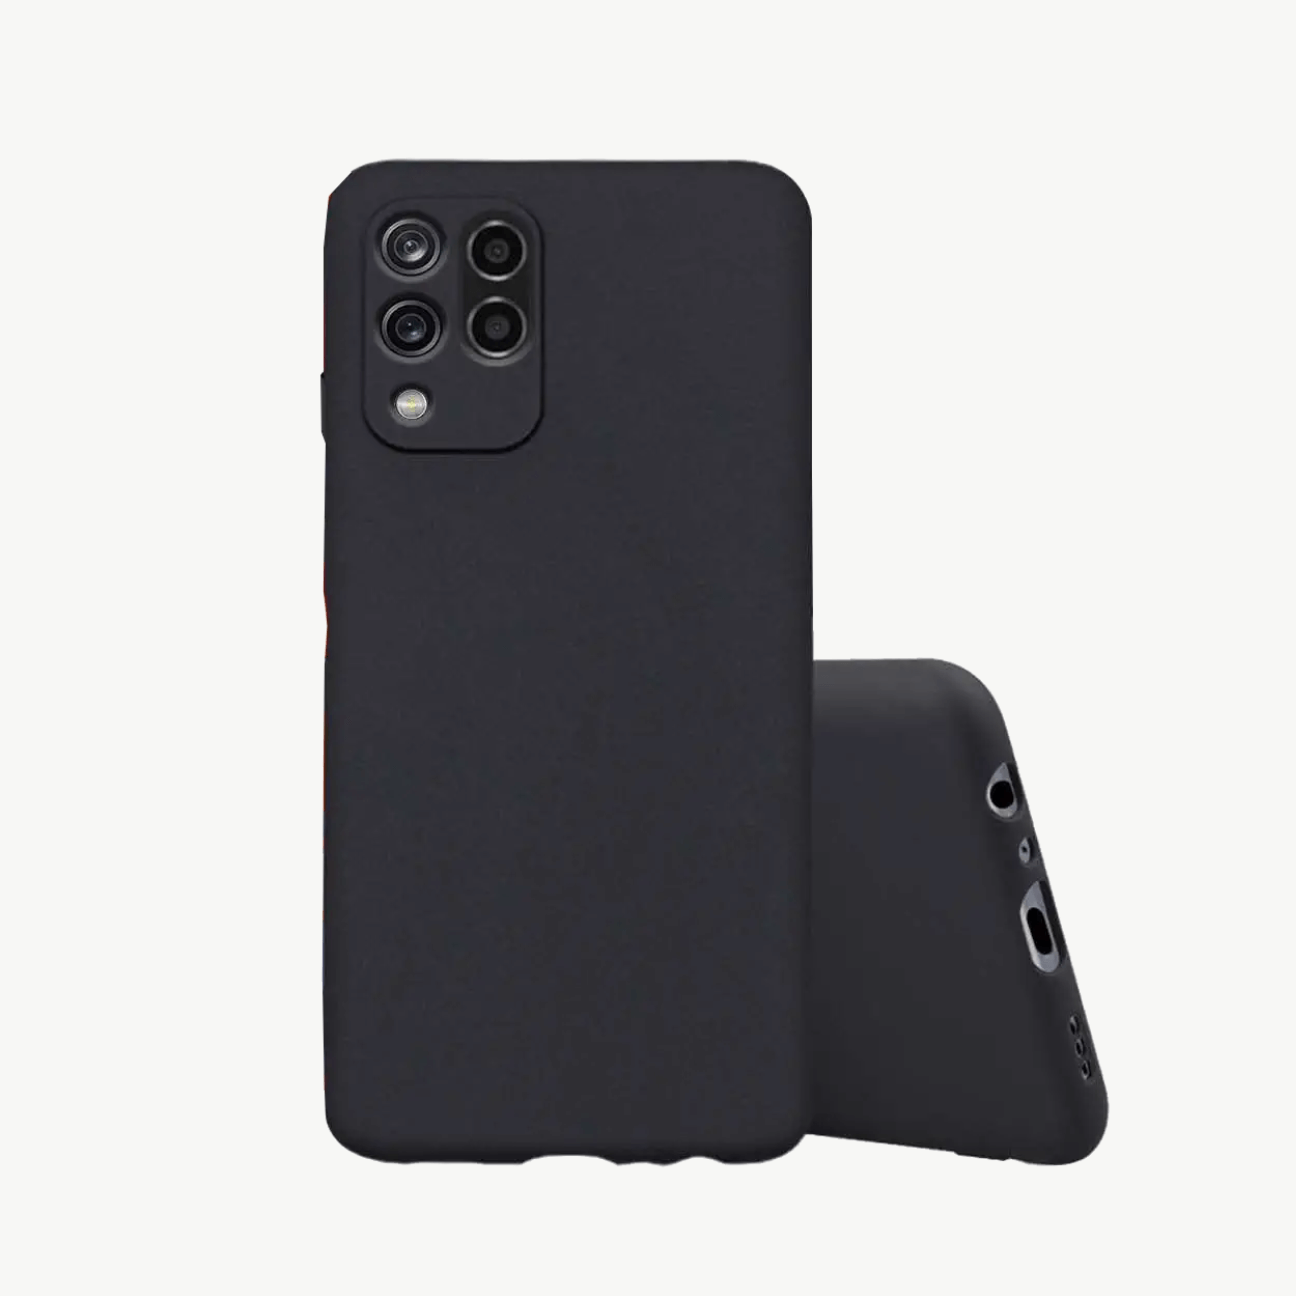 Xiaomi Redmi Go Black Soft Silicone Phone Case Image